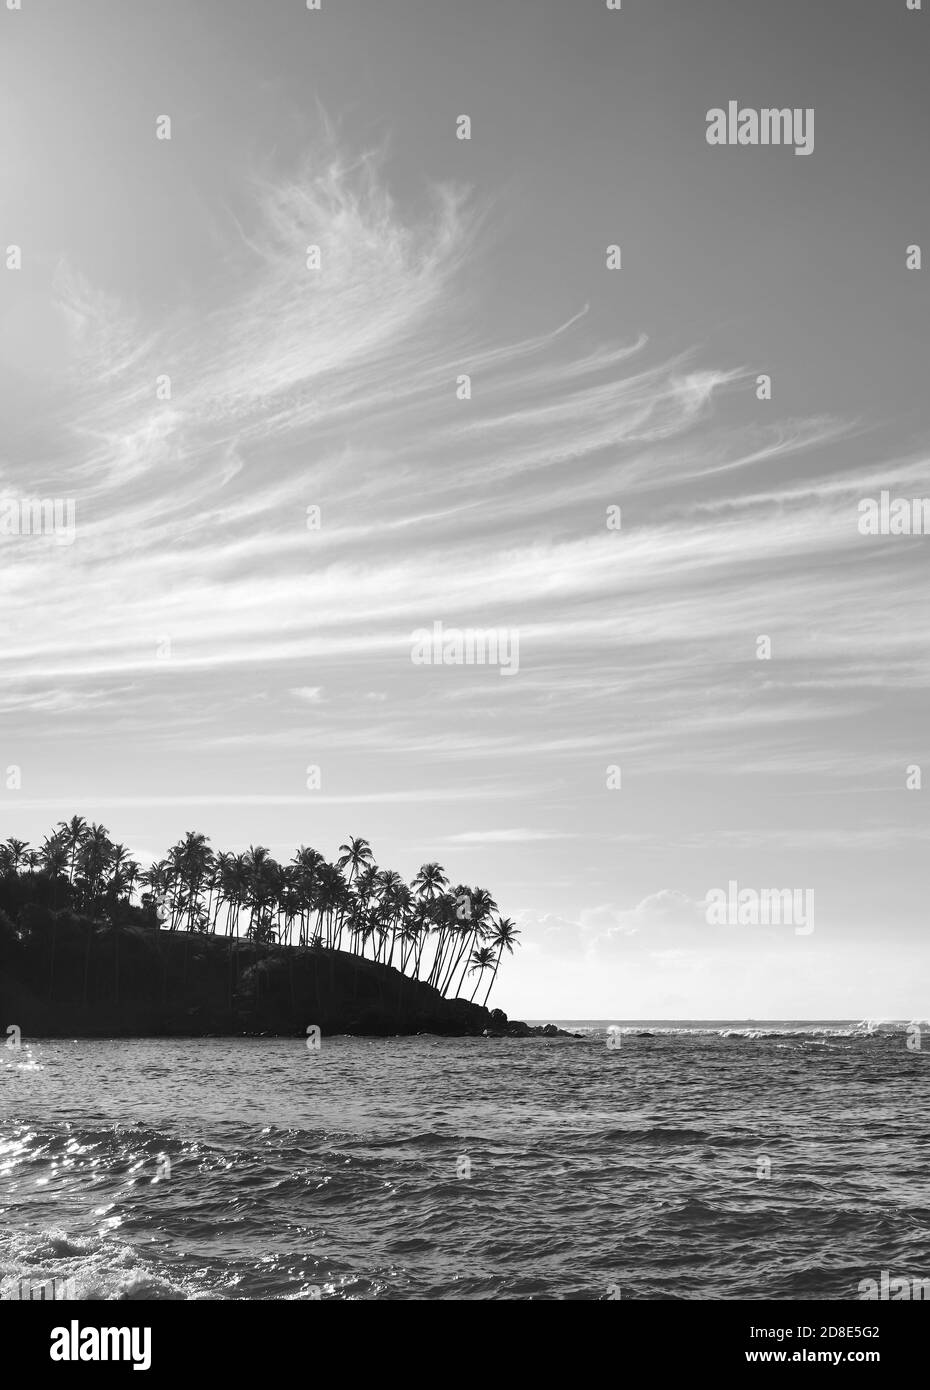 Immagine in bianco e nero della costa tropicale dell'isola con le silhouette delle palme al tramonto, Sri Lanka. Foto Stock